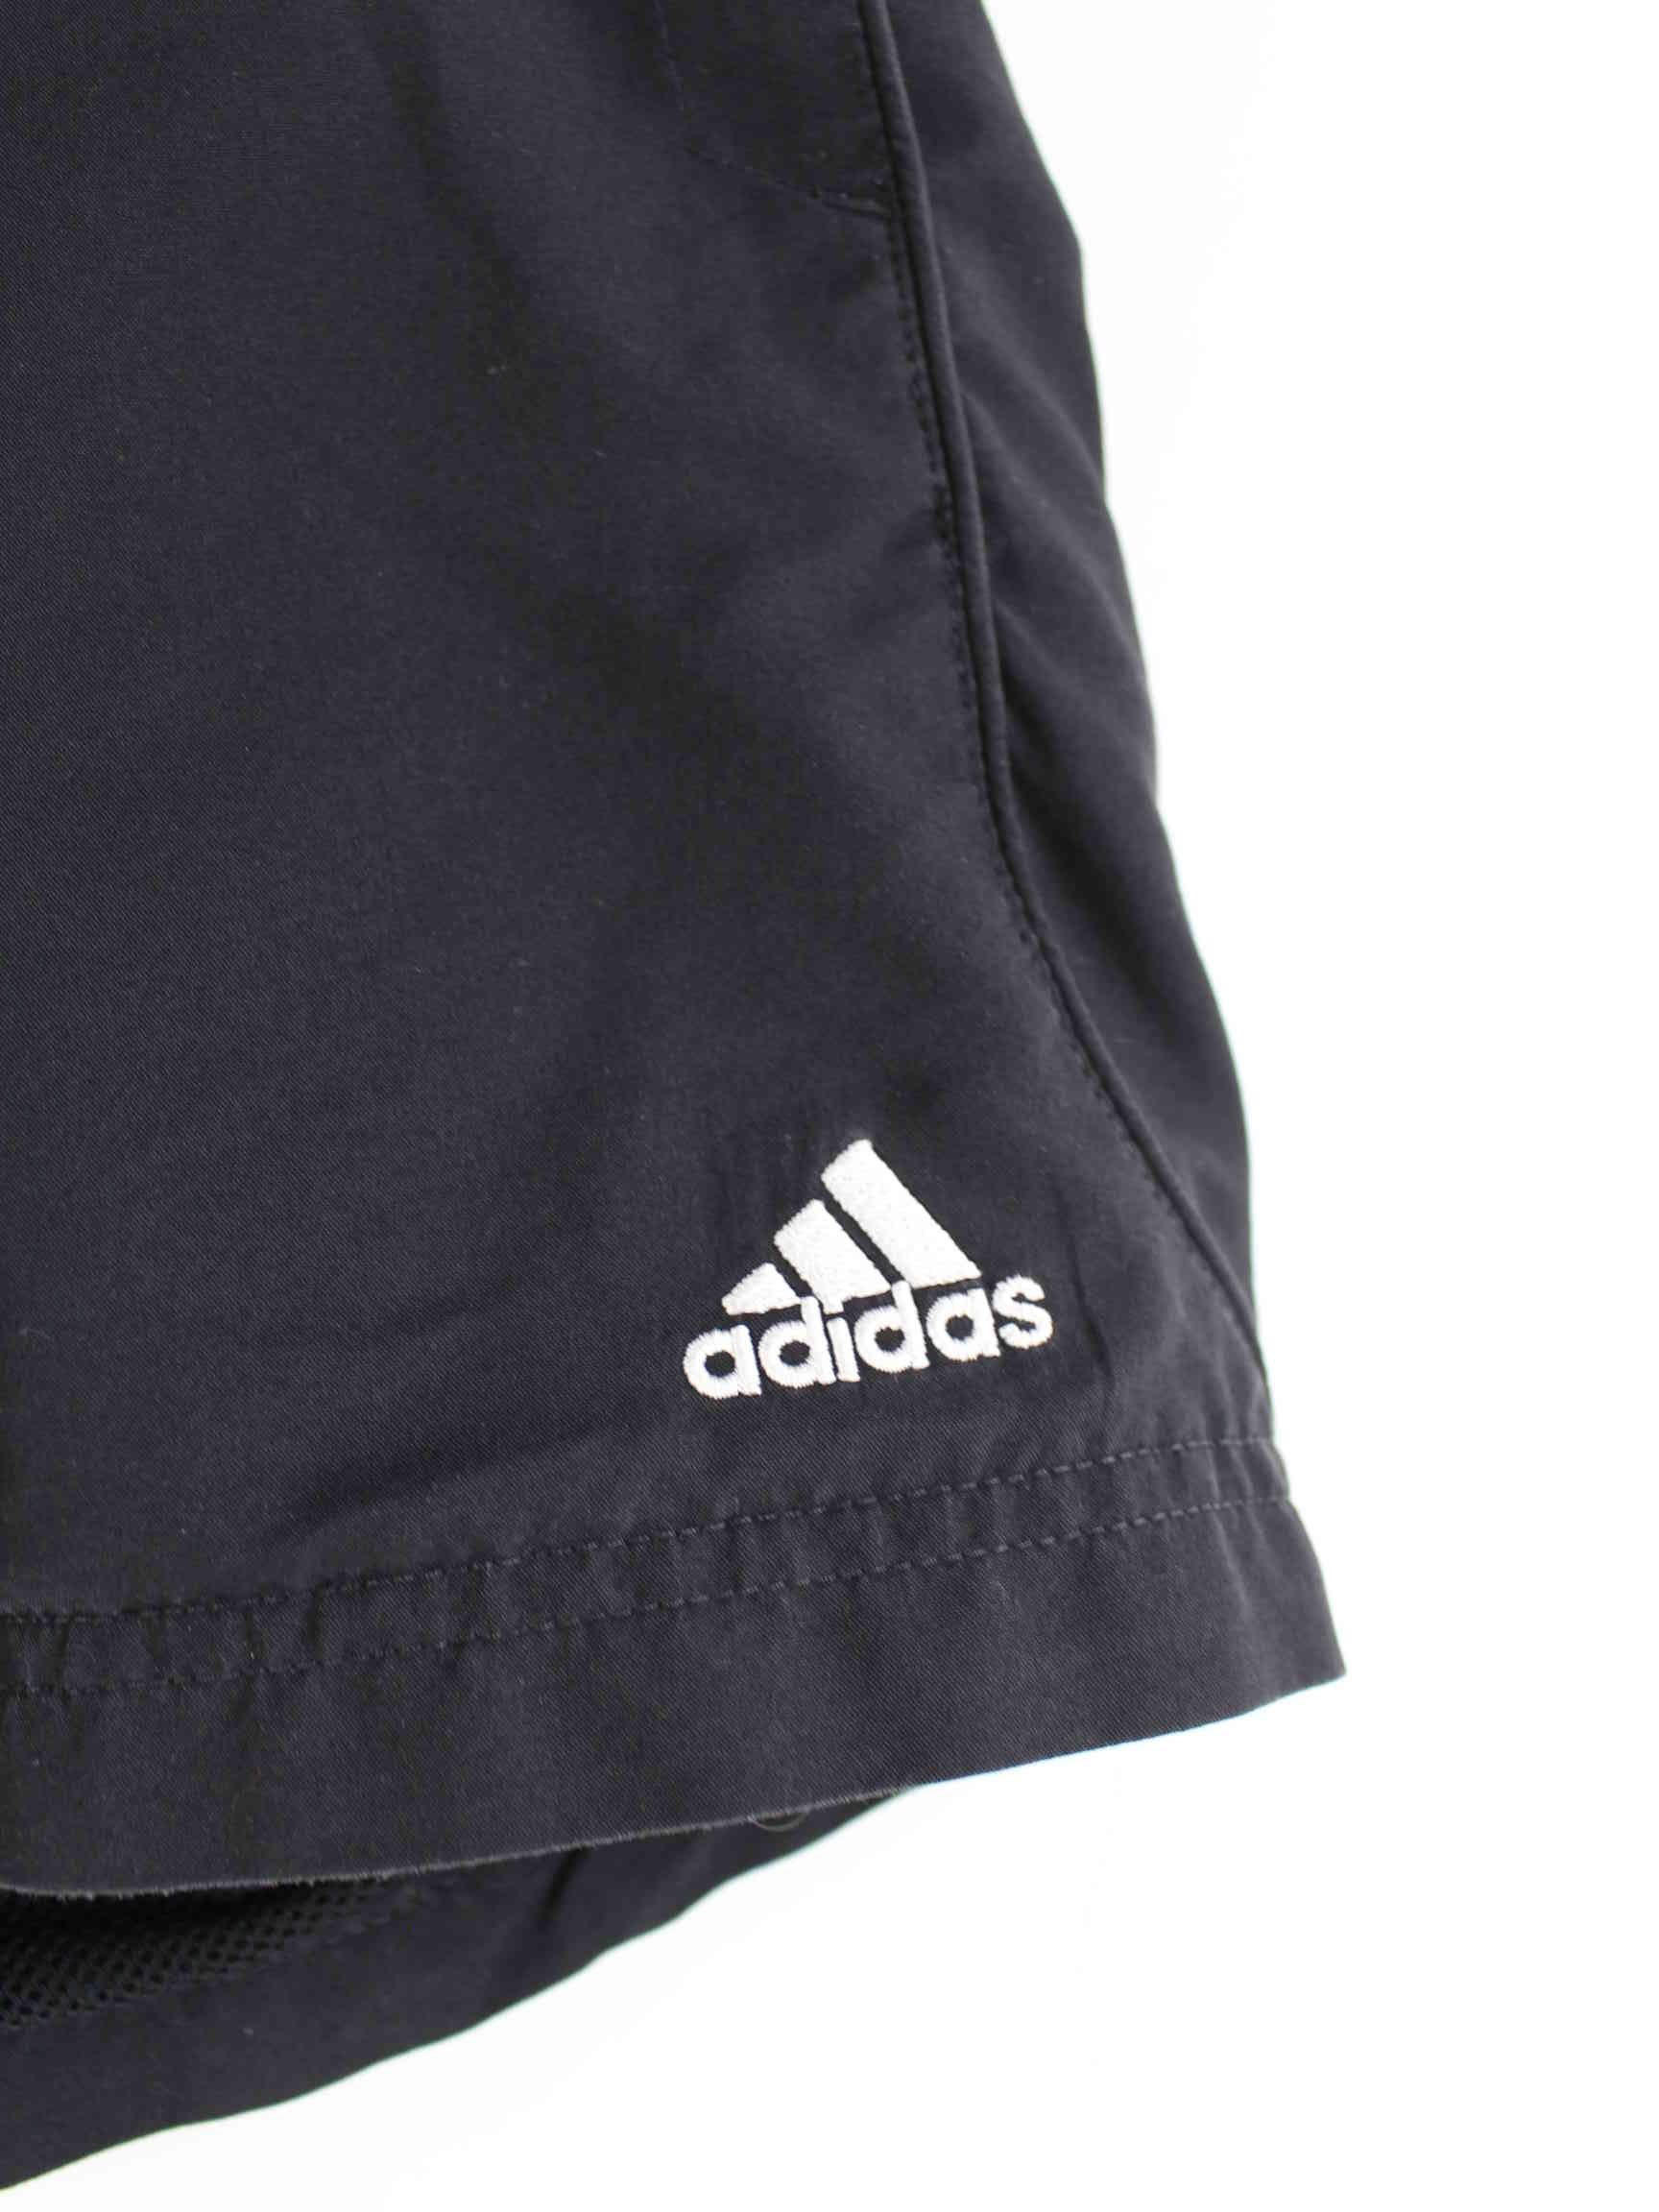 Adidas Damen Shorts Schwarz L (detail image 1)